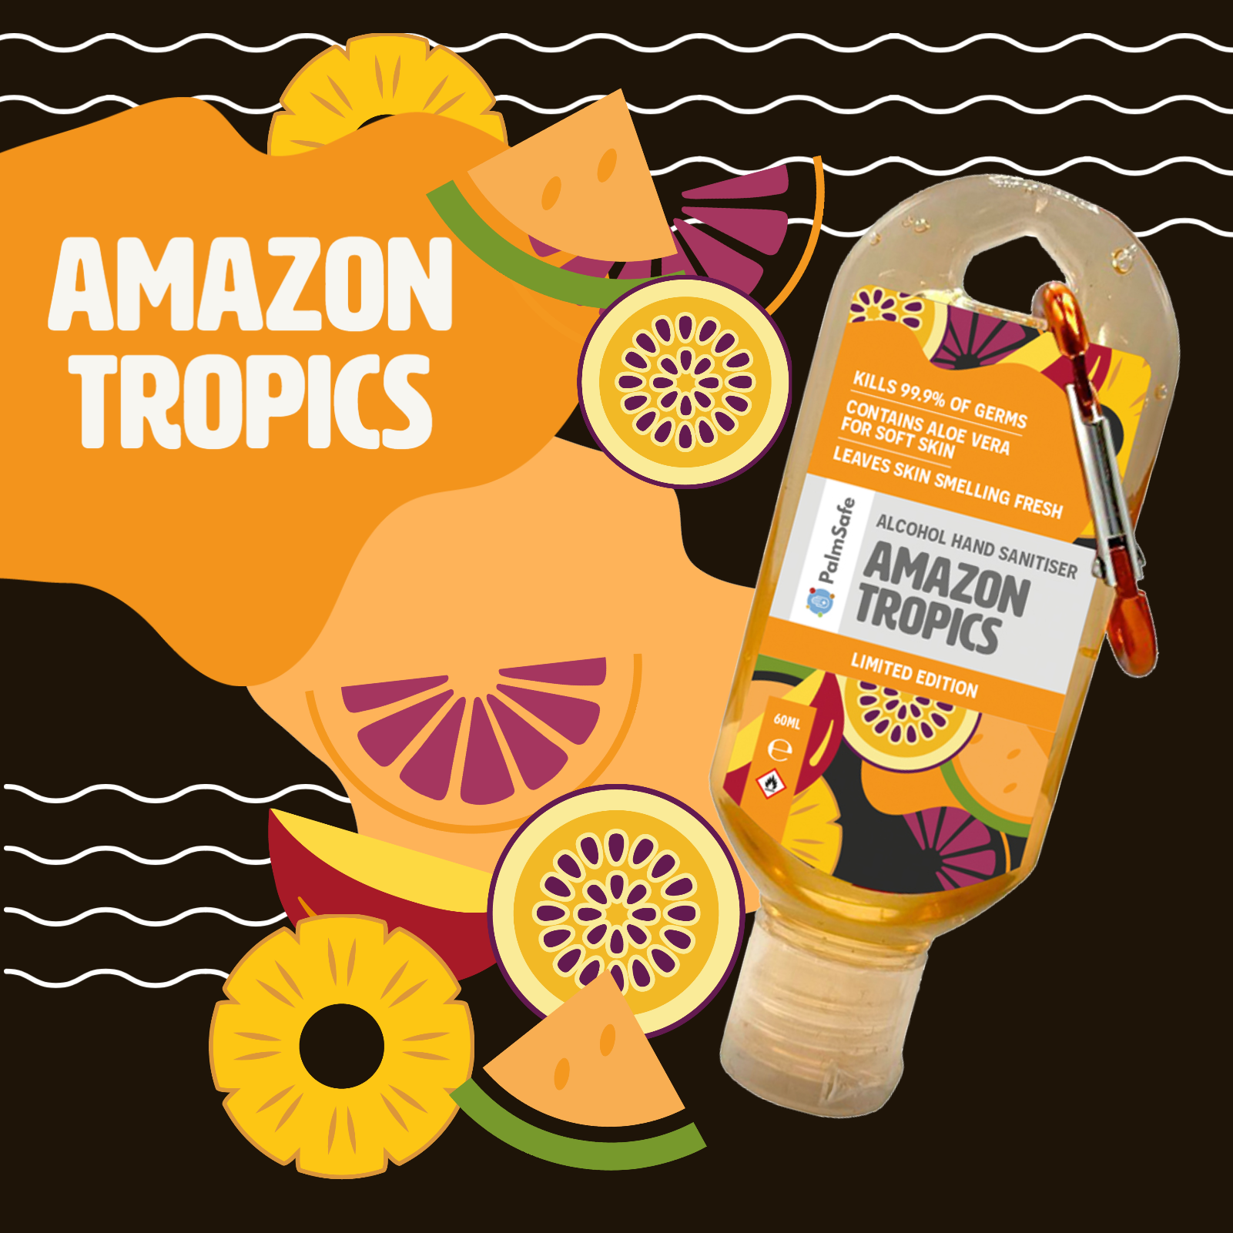 Amazon Tropics